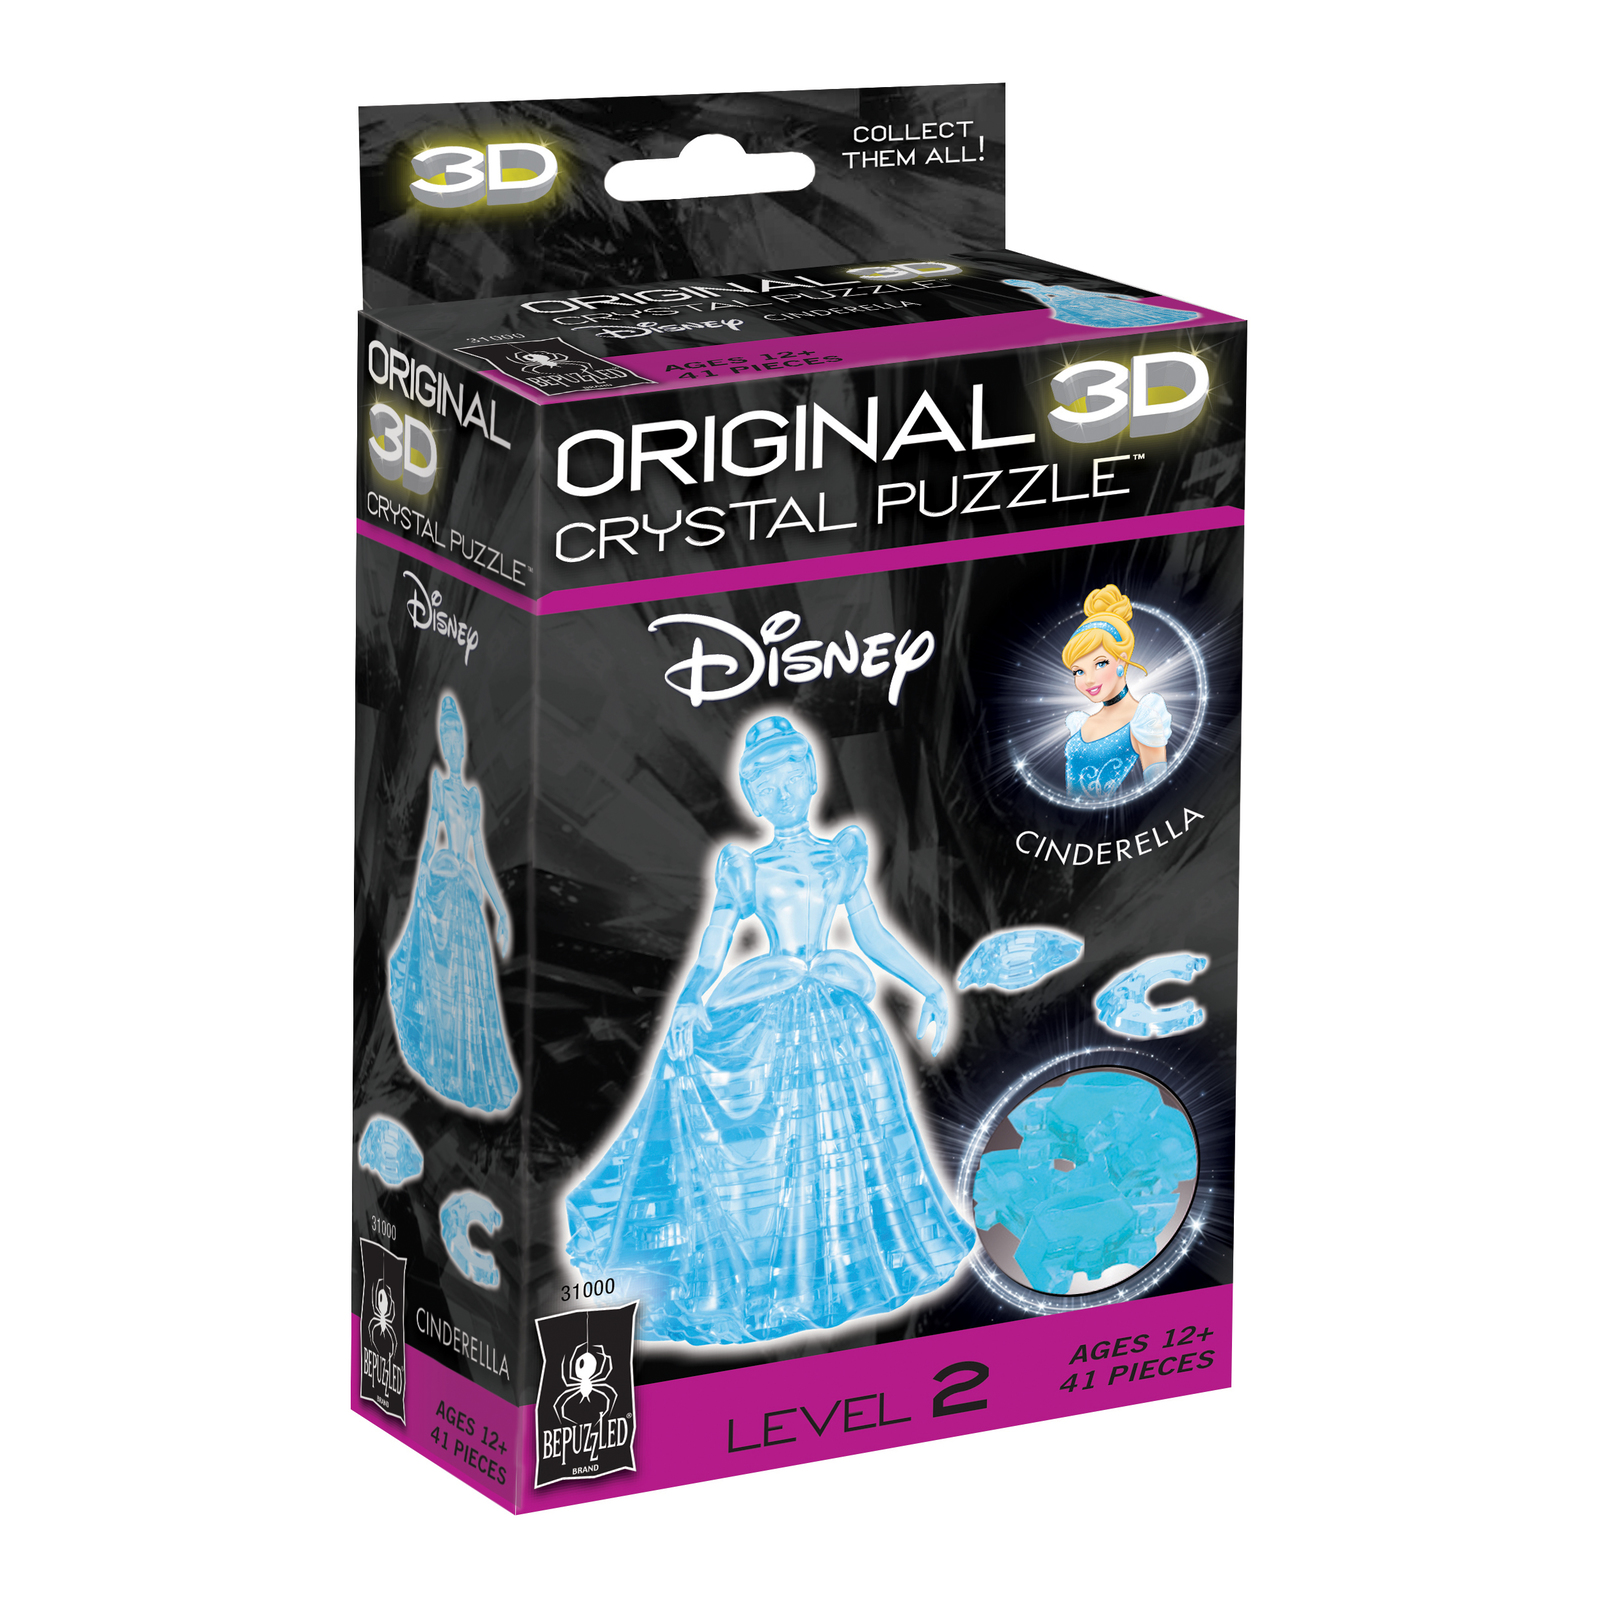 Disney 3D Crystal Puzzle Cinderella